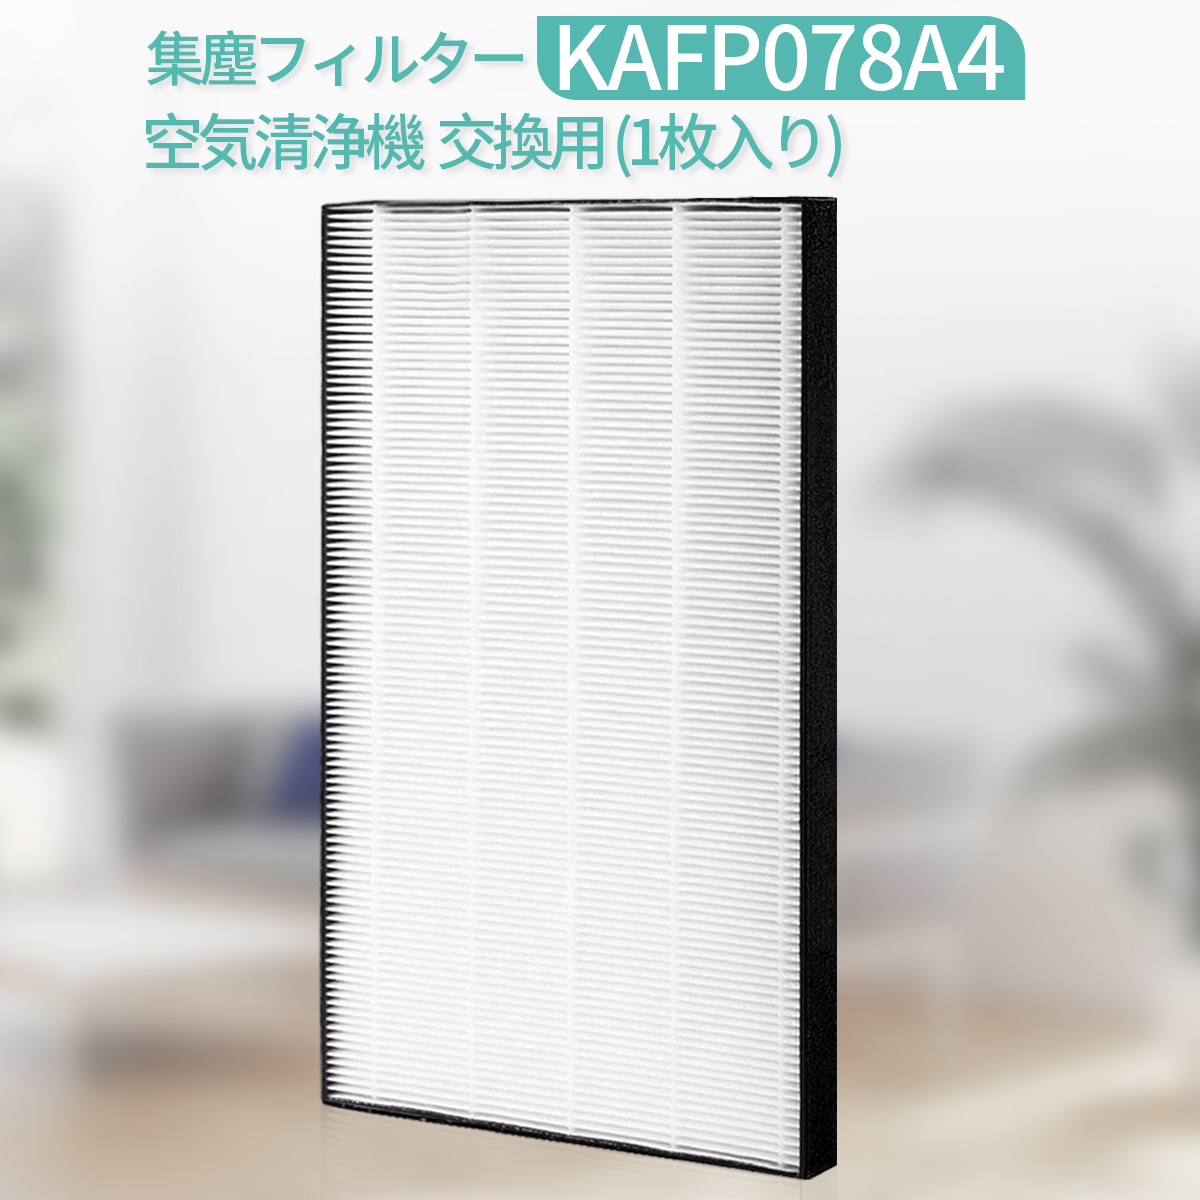 【楽天市場】KAFP029A4 集塵フィルター ダイキン 空気清浄機